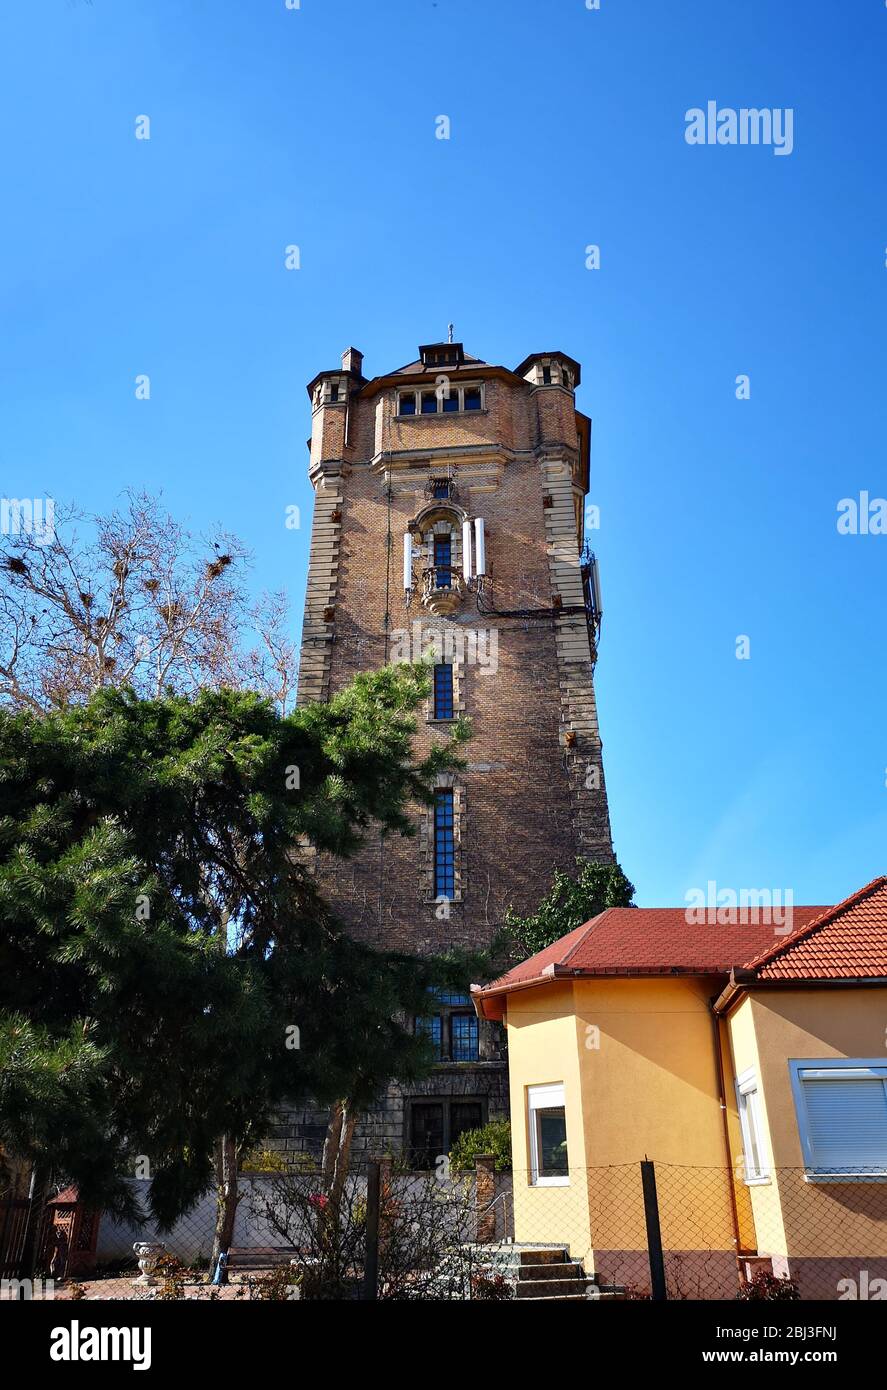 Vecchio edificio storico, struttura della torre dell'acqua, punto di riferimento dell'architettura medievale conosciuto come 'Turnul de apa' in Arad, Romania, 03/31/2019 Foto Stock